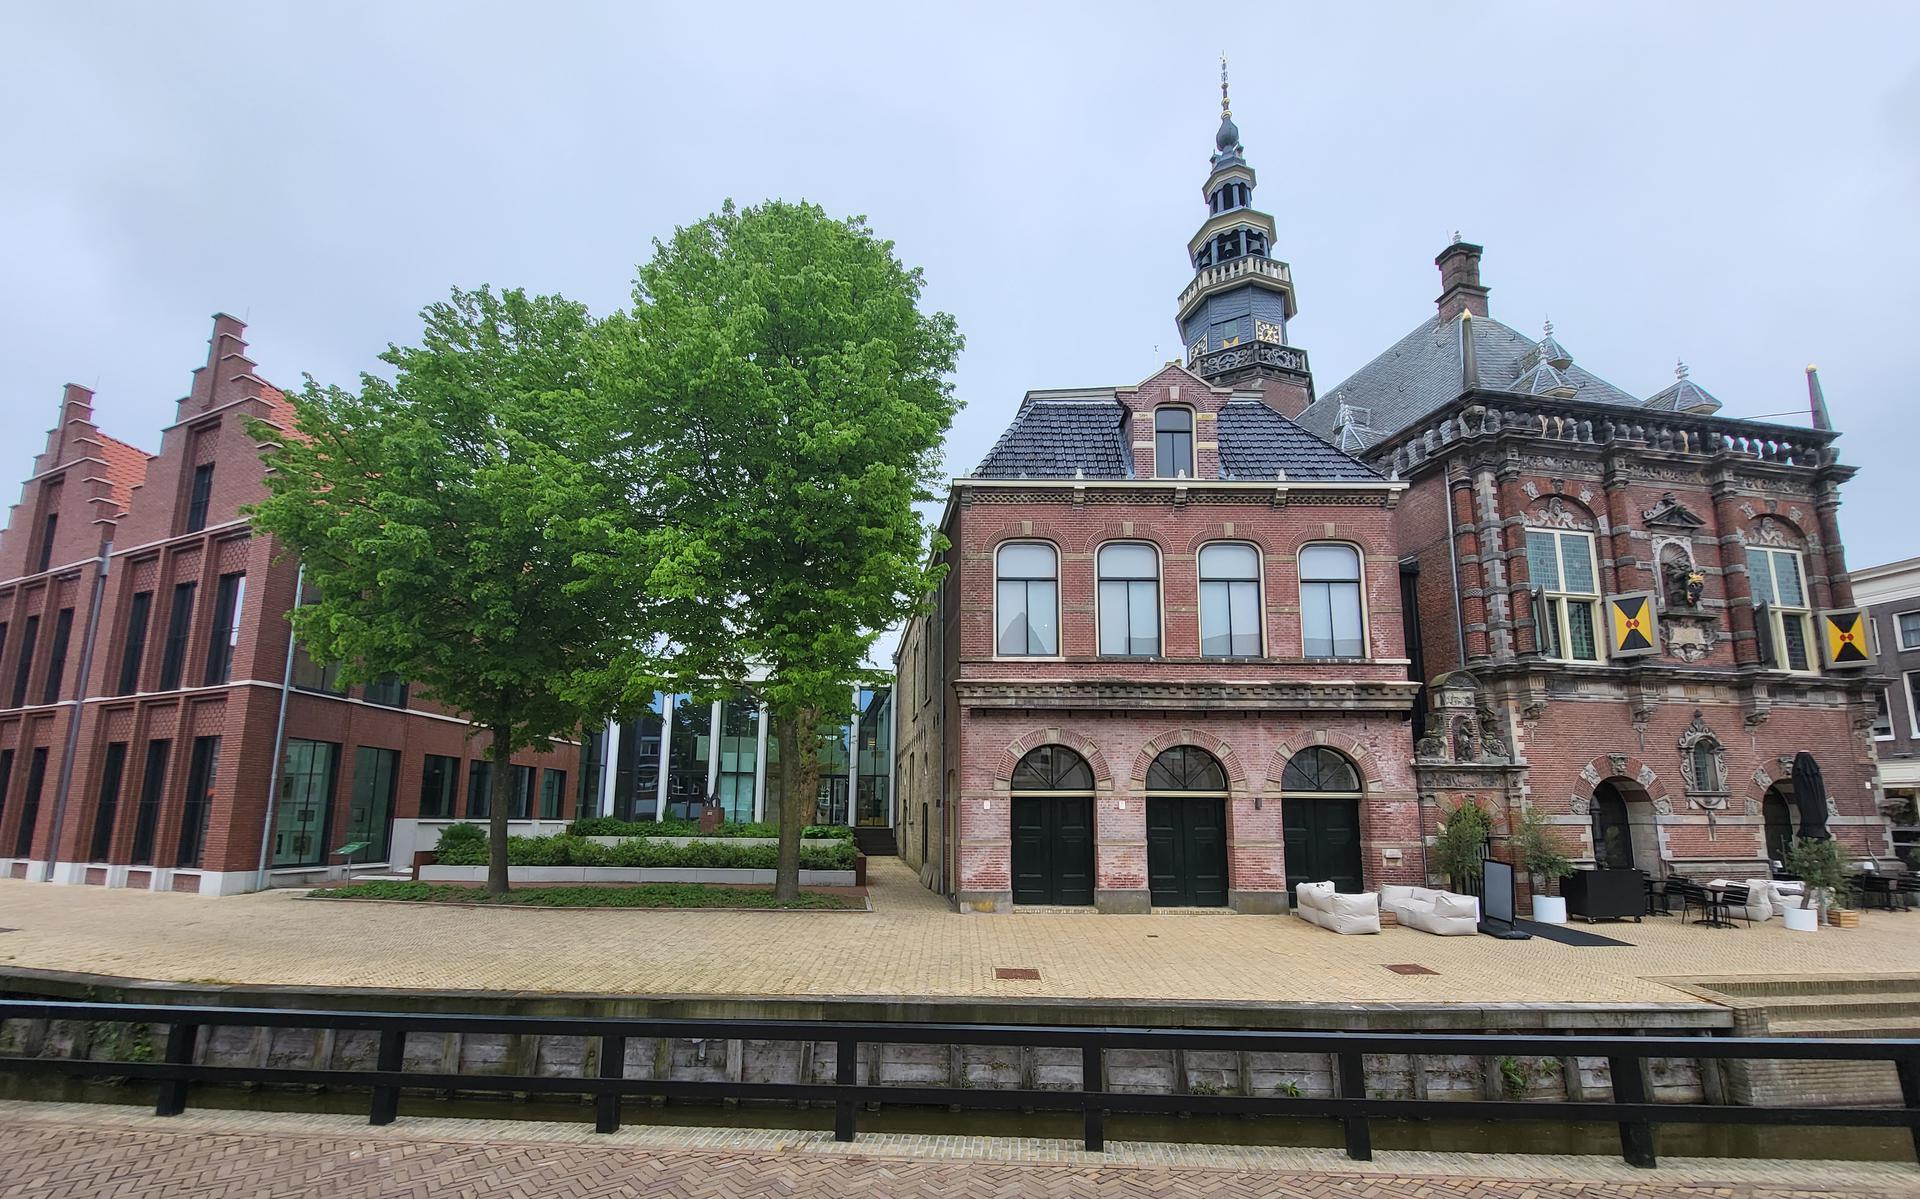 Cultuurhistorisch centrum De Tiid in Bolsward, met rechts het monumentale deel en links het nieuwe gedeelte, architectonisch samengevoegd door Adema Architecten uit Dokkum.